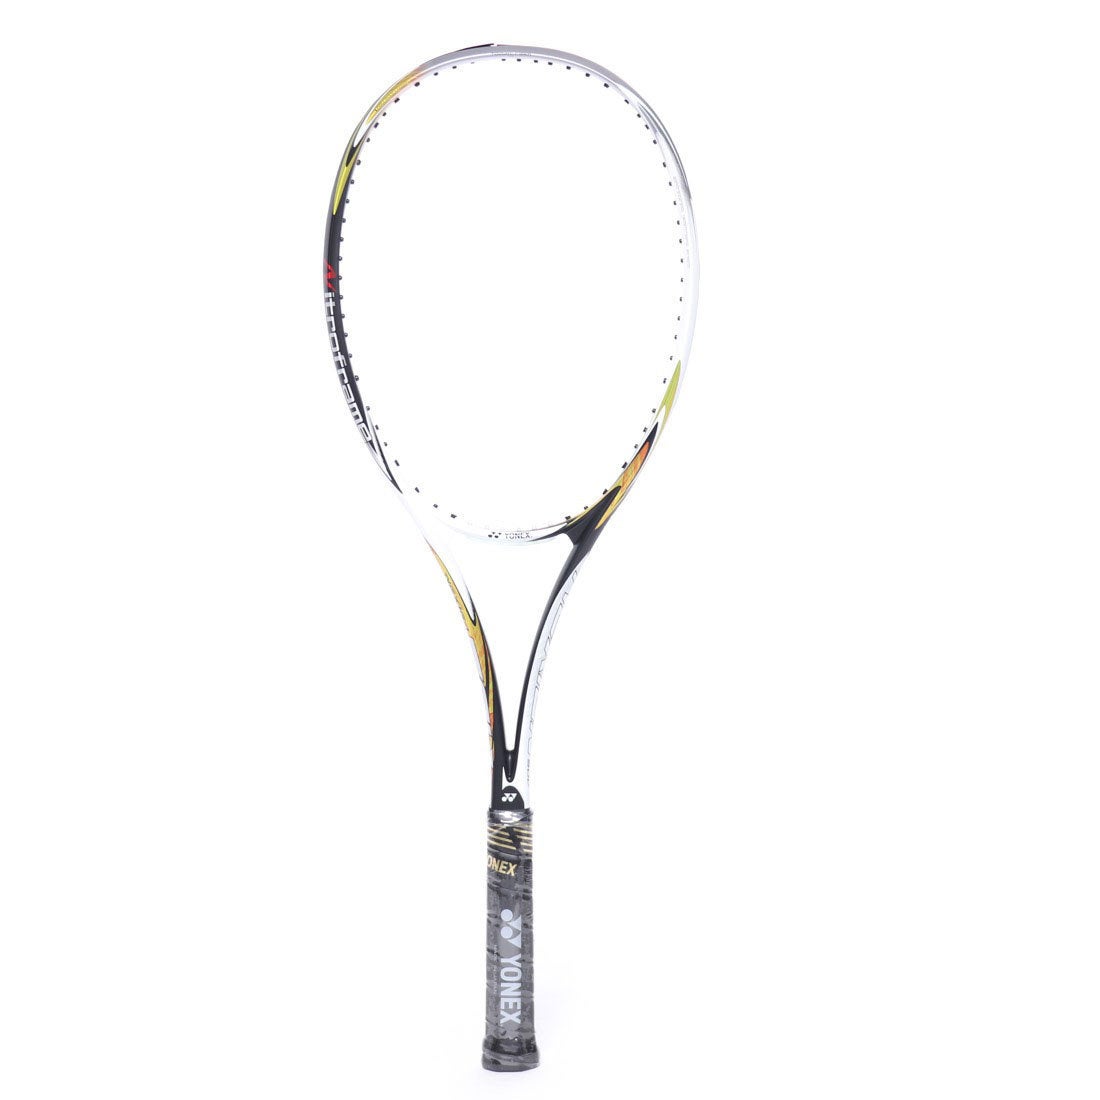 ヨネックス YONEX 軟式テニス 未張りラケット ネクシーガ50V NXG50V